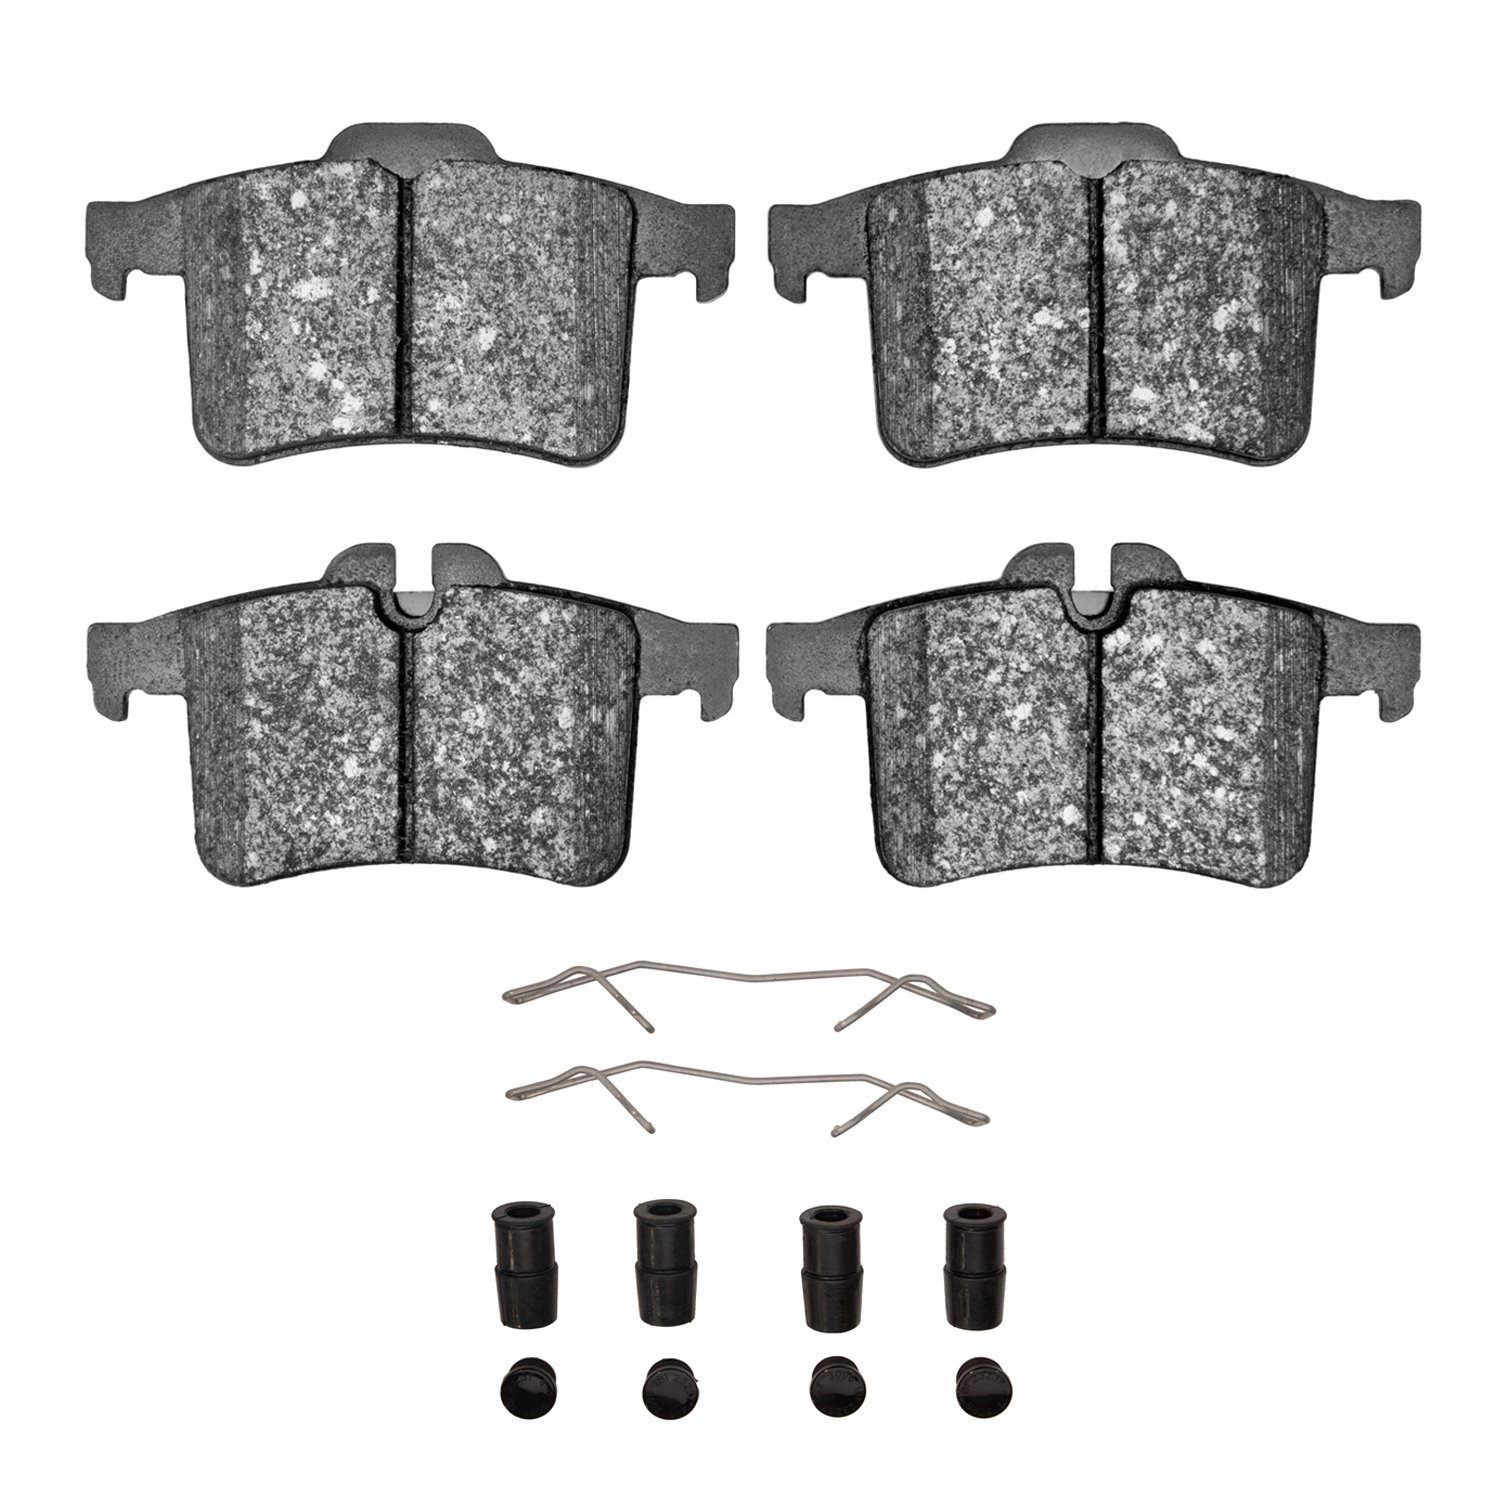 1311-1747-01 3000-Series Semi-Metallic Brake Pads & Hardware Kit, 2013-2015 Jaguar, Position: Rear